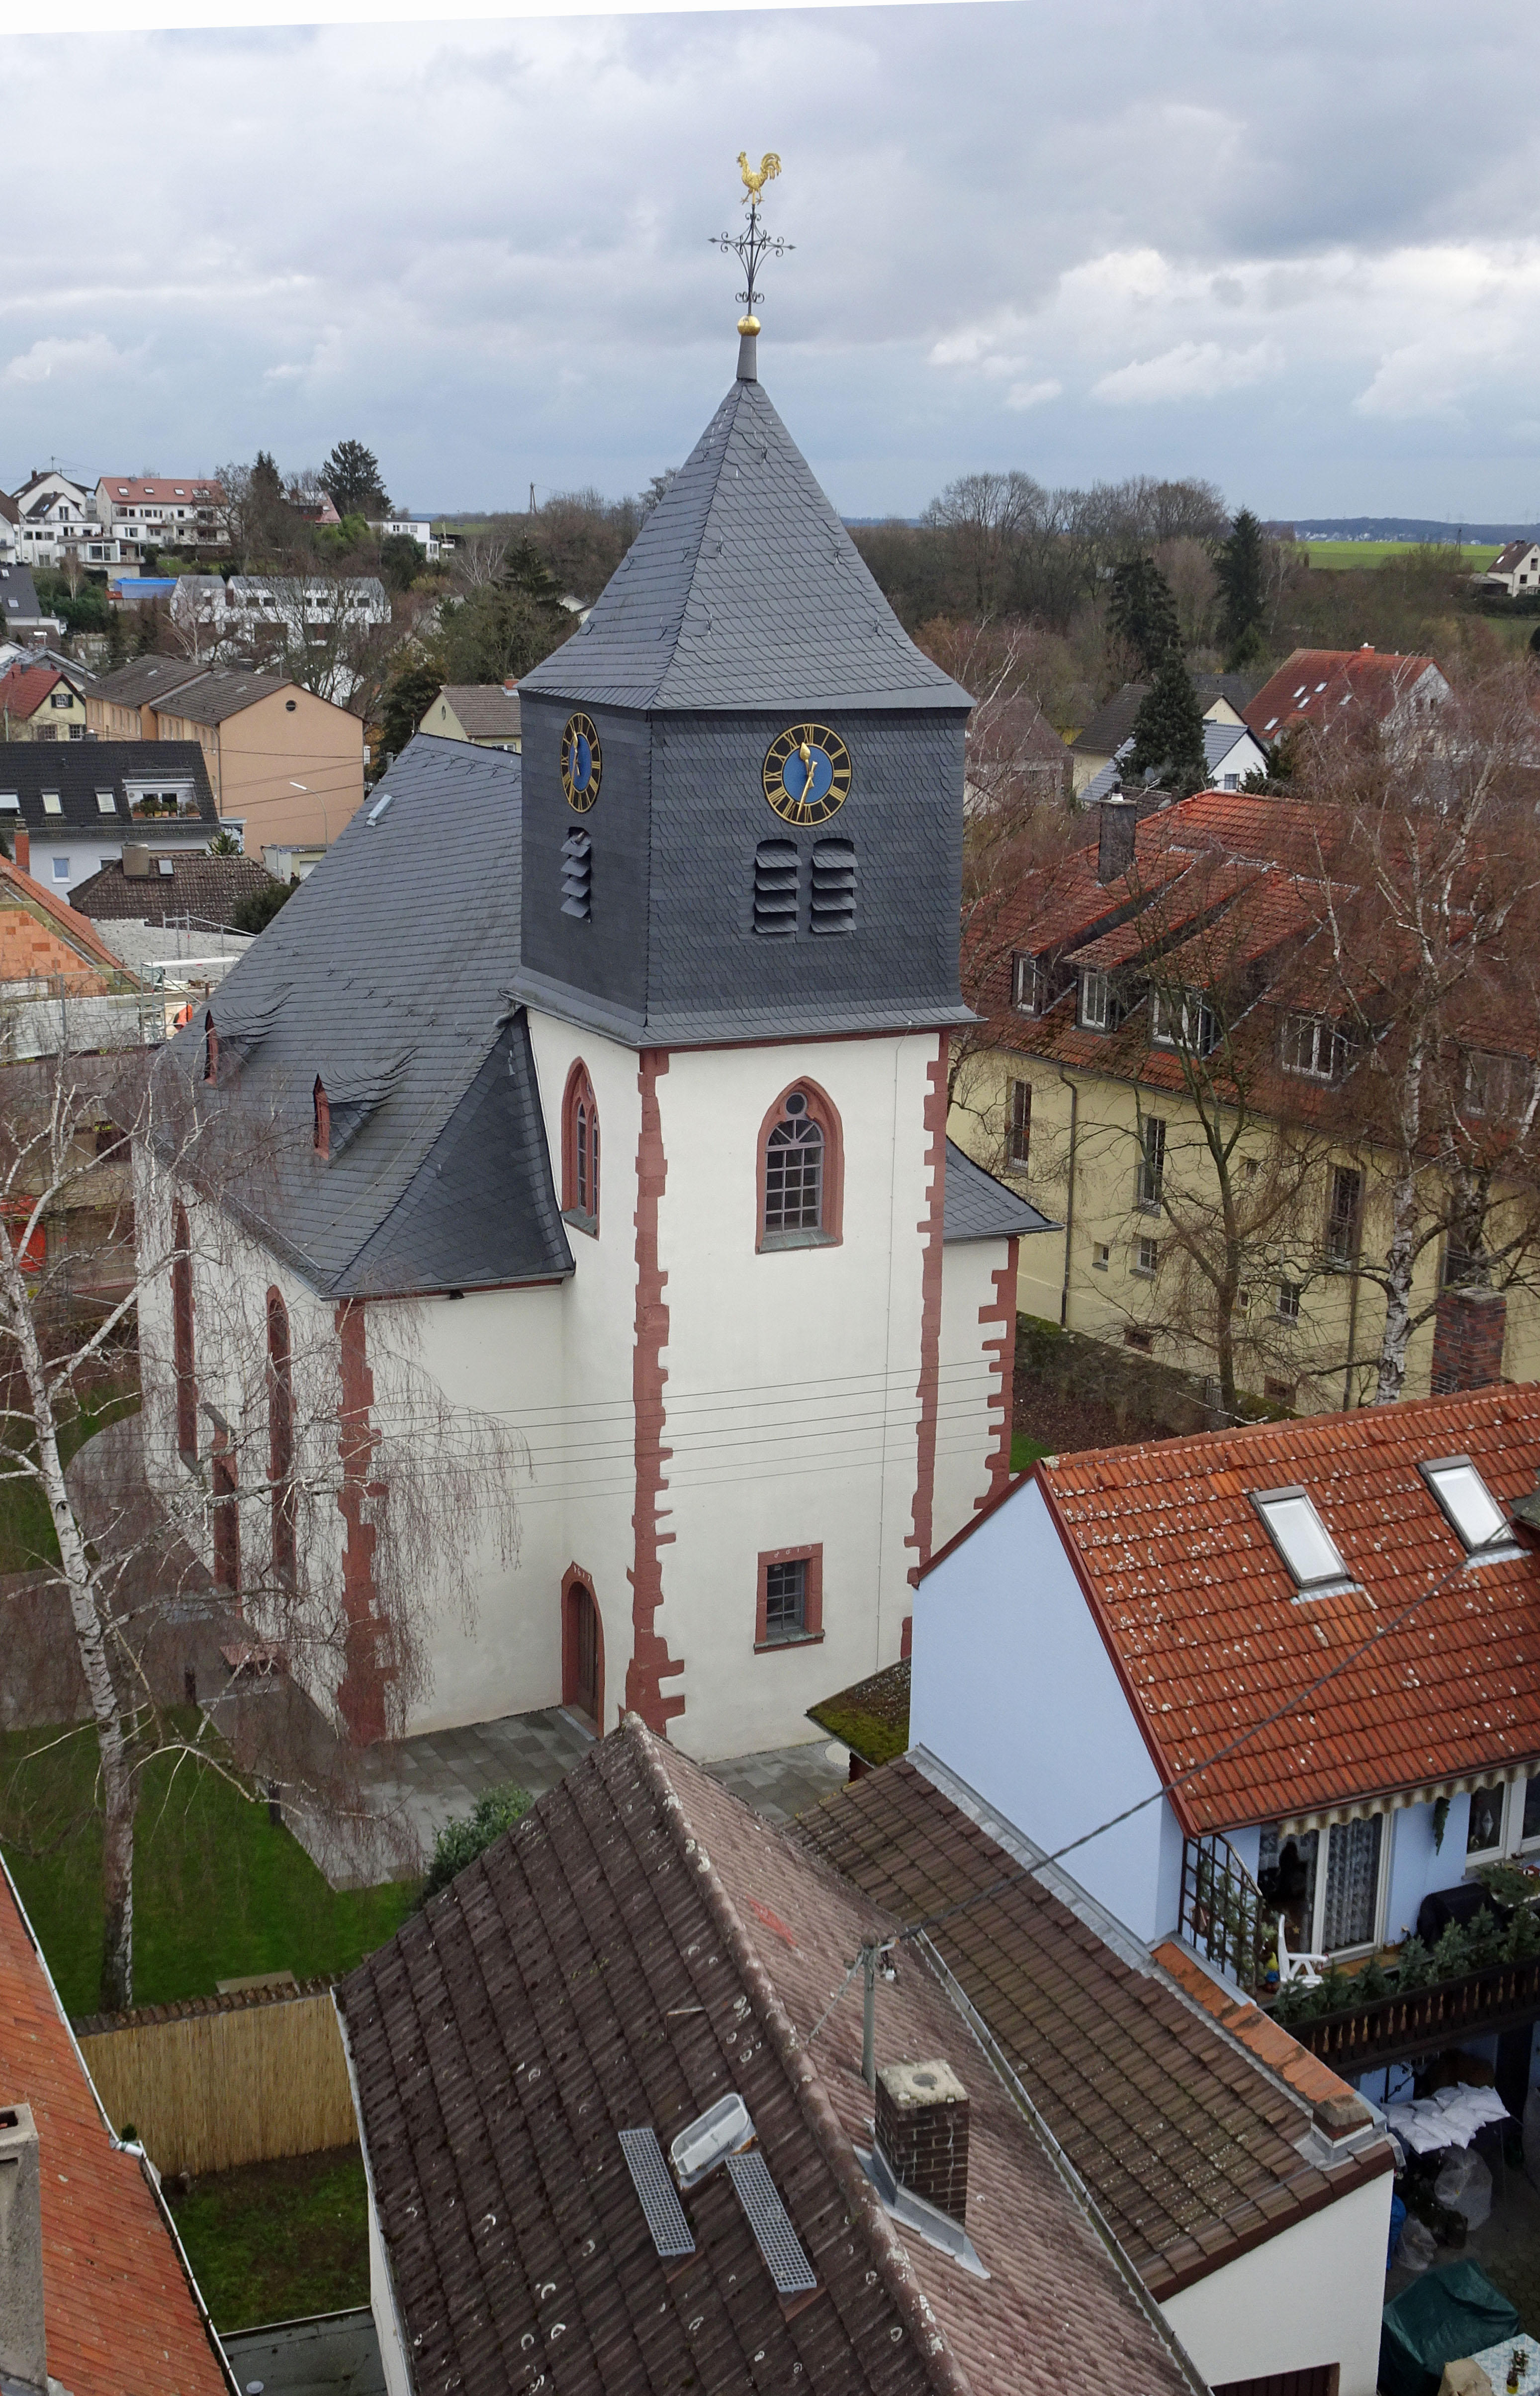 Evangelische Kirche Nieder-Eschbach - Evangelische Kirchengemeinde Nieder-Eschbach, Deuil-La-Barre-Straße 74 in Frankfurt/Main